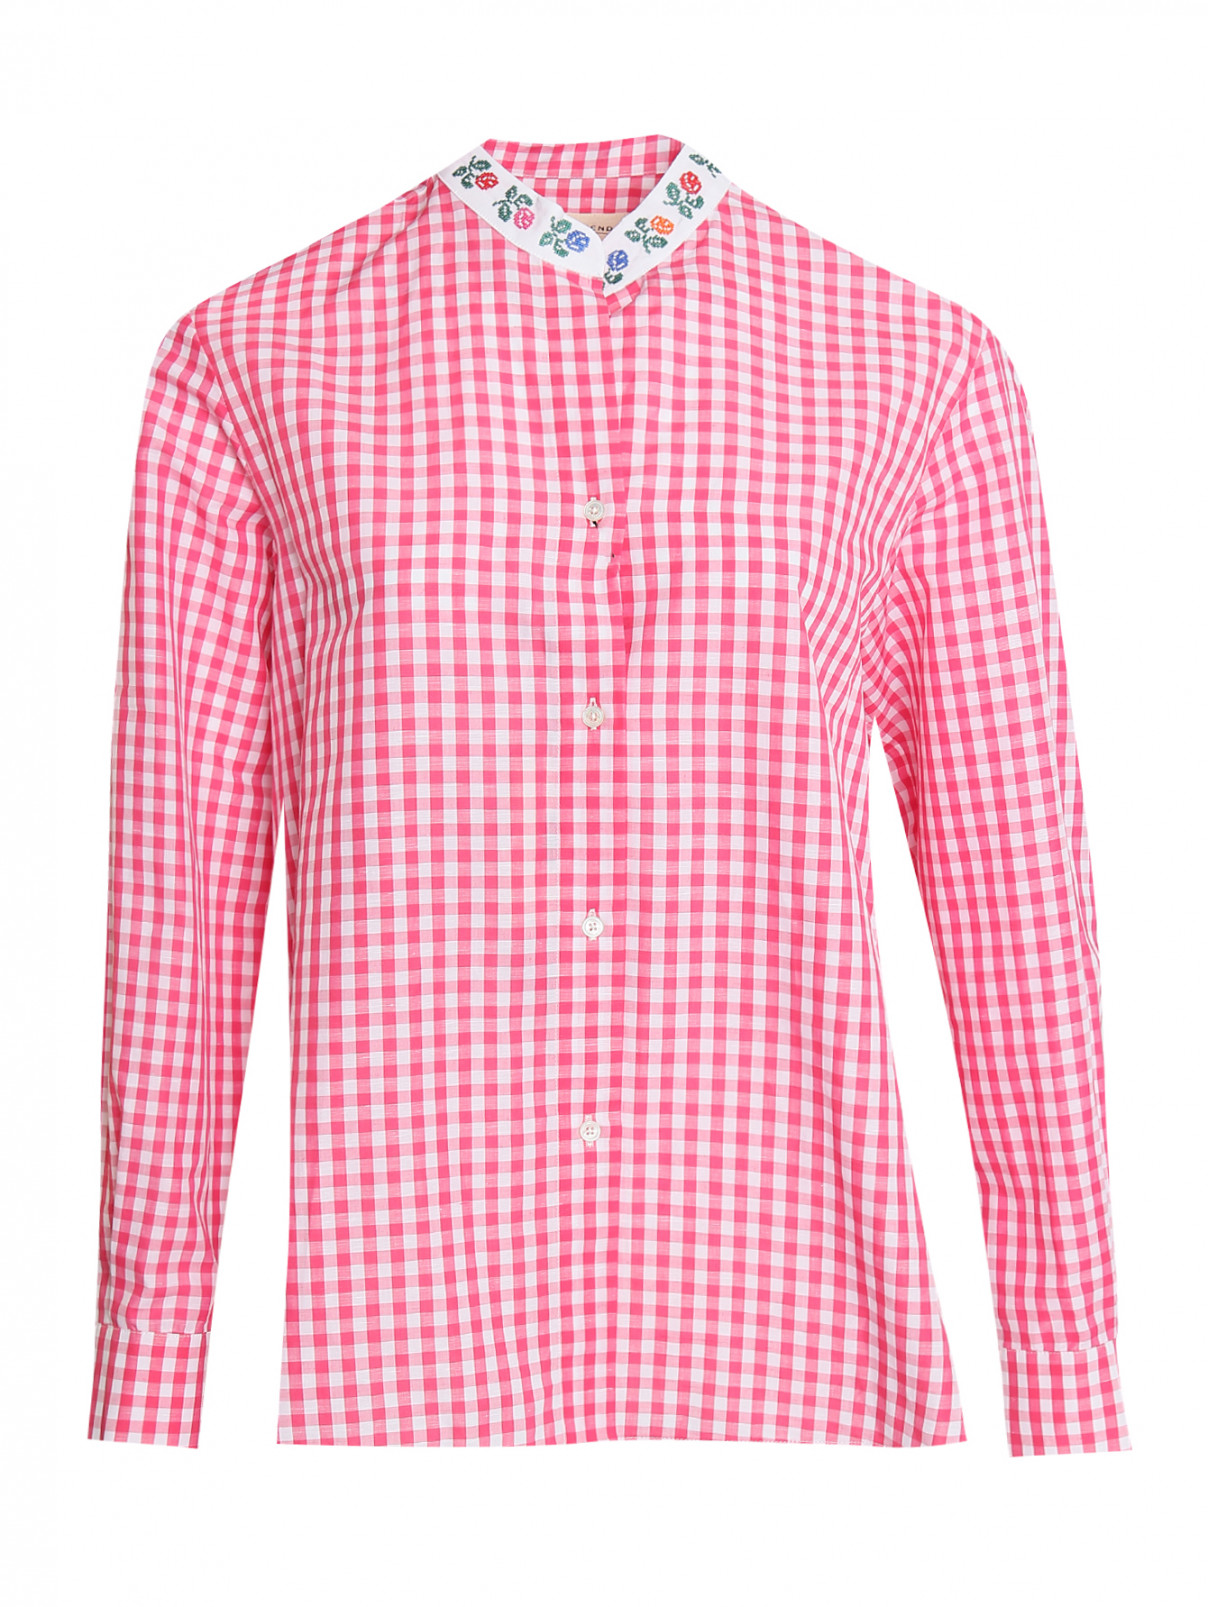 Рубашка в клетку из хлопка и льна Weekend Max Mara  –  Общий вид  – Цвет:  Розовый